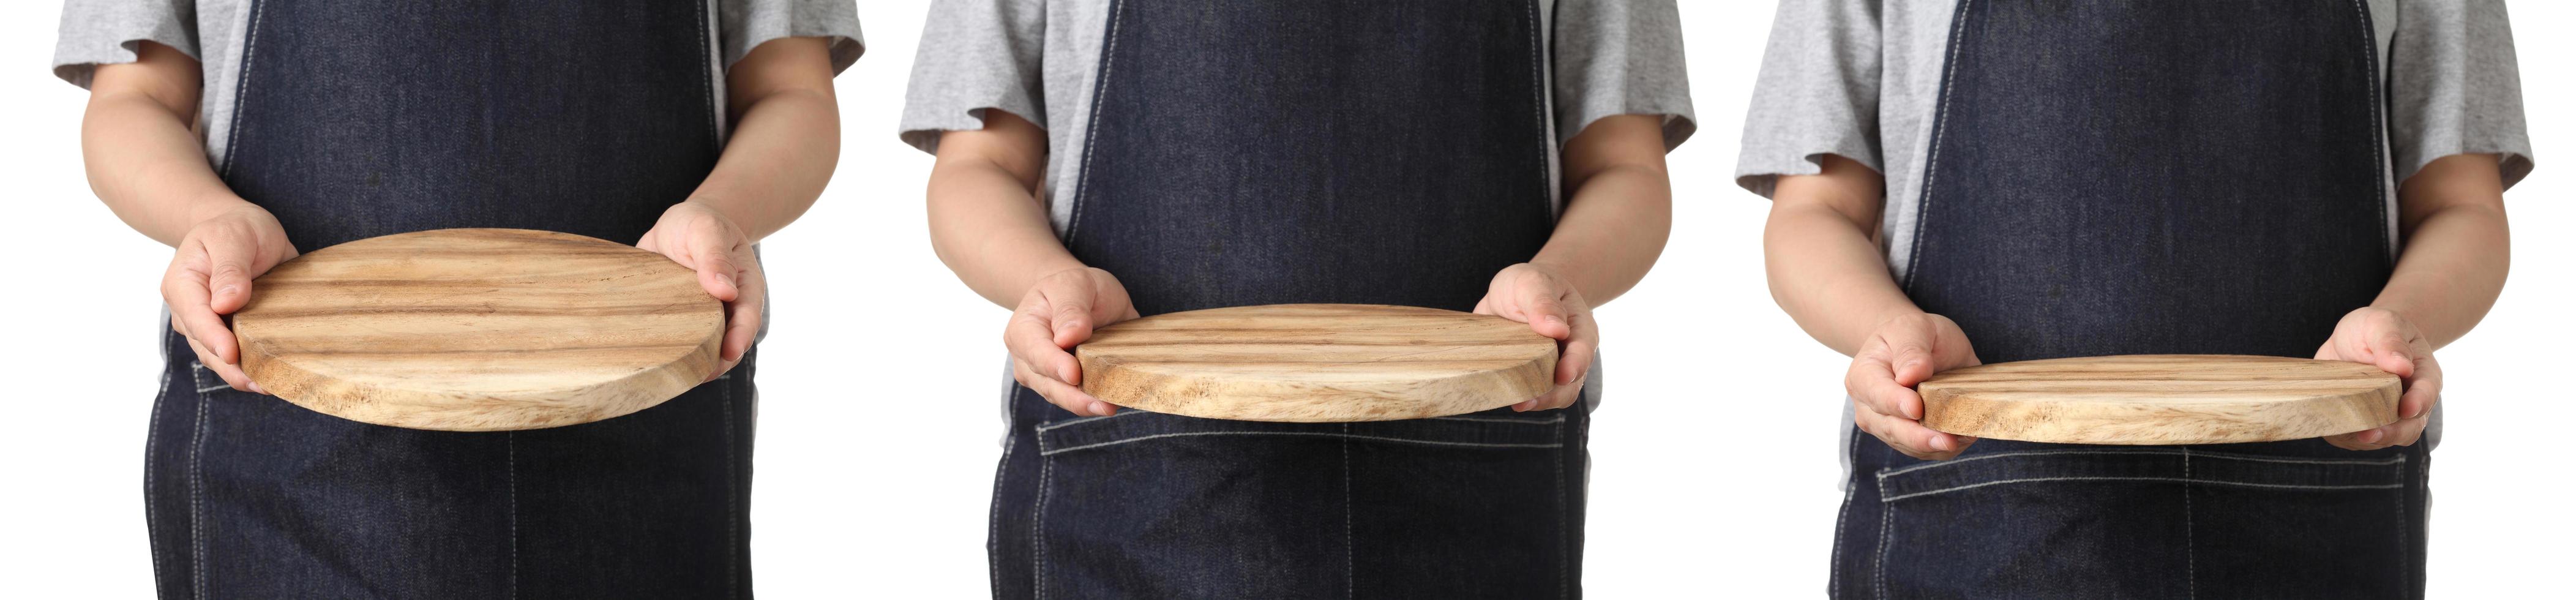 Chef sosteniendo tabla de cortar de madera sobre fondo blanco. foto